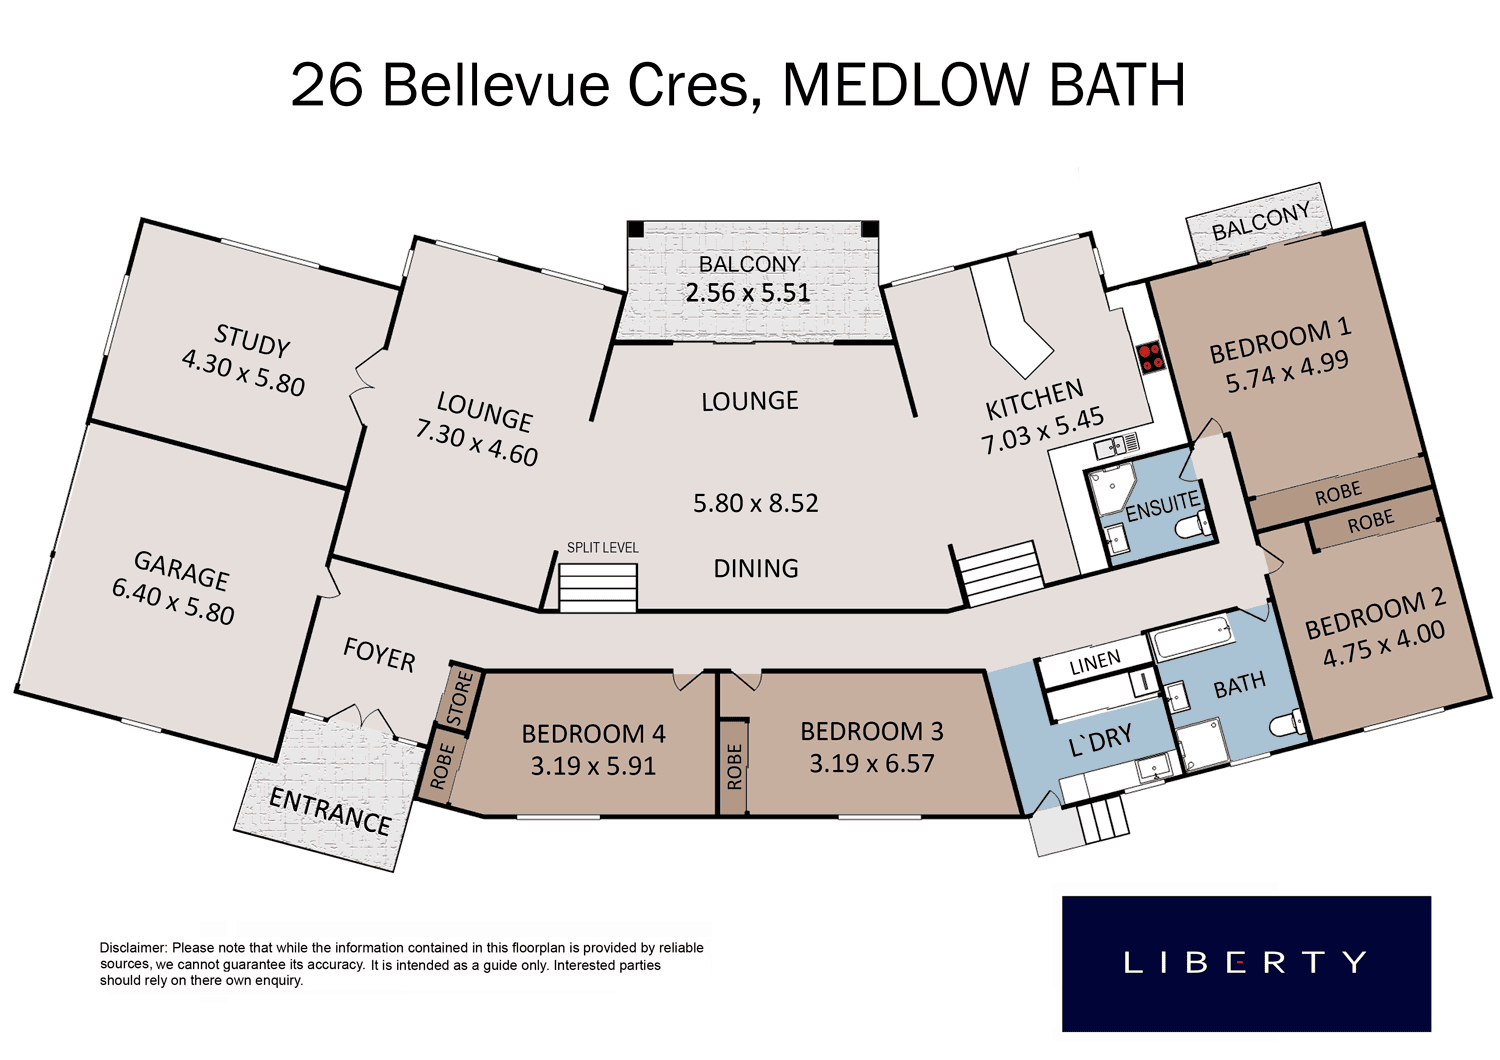 26 Bellevue Cres, Medlow Bath, NSW 2780